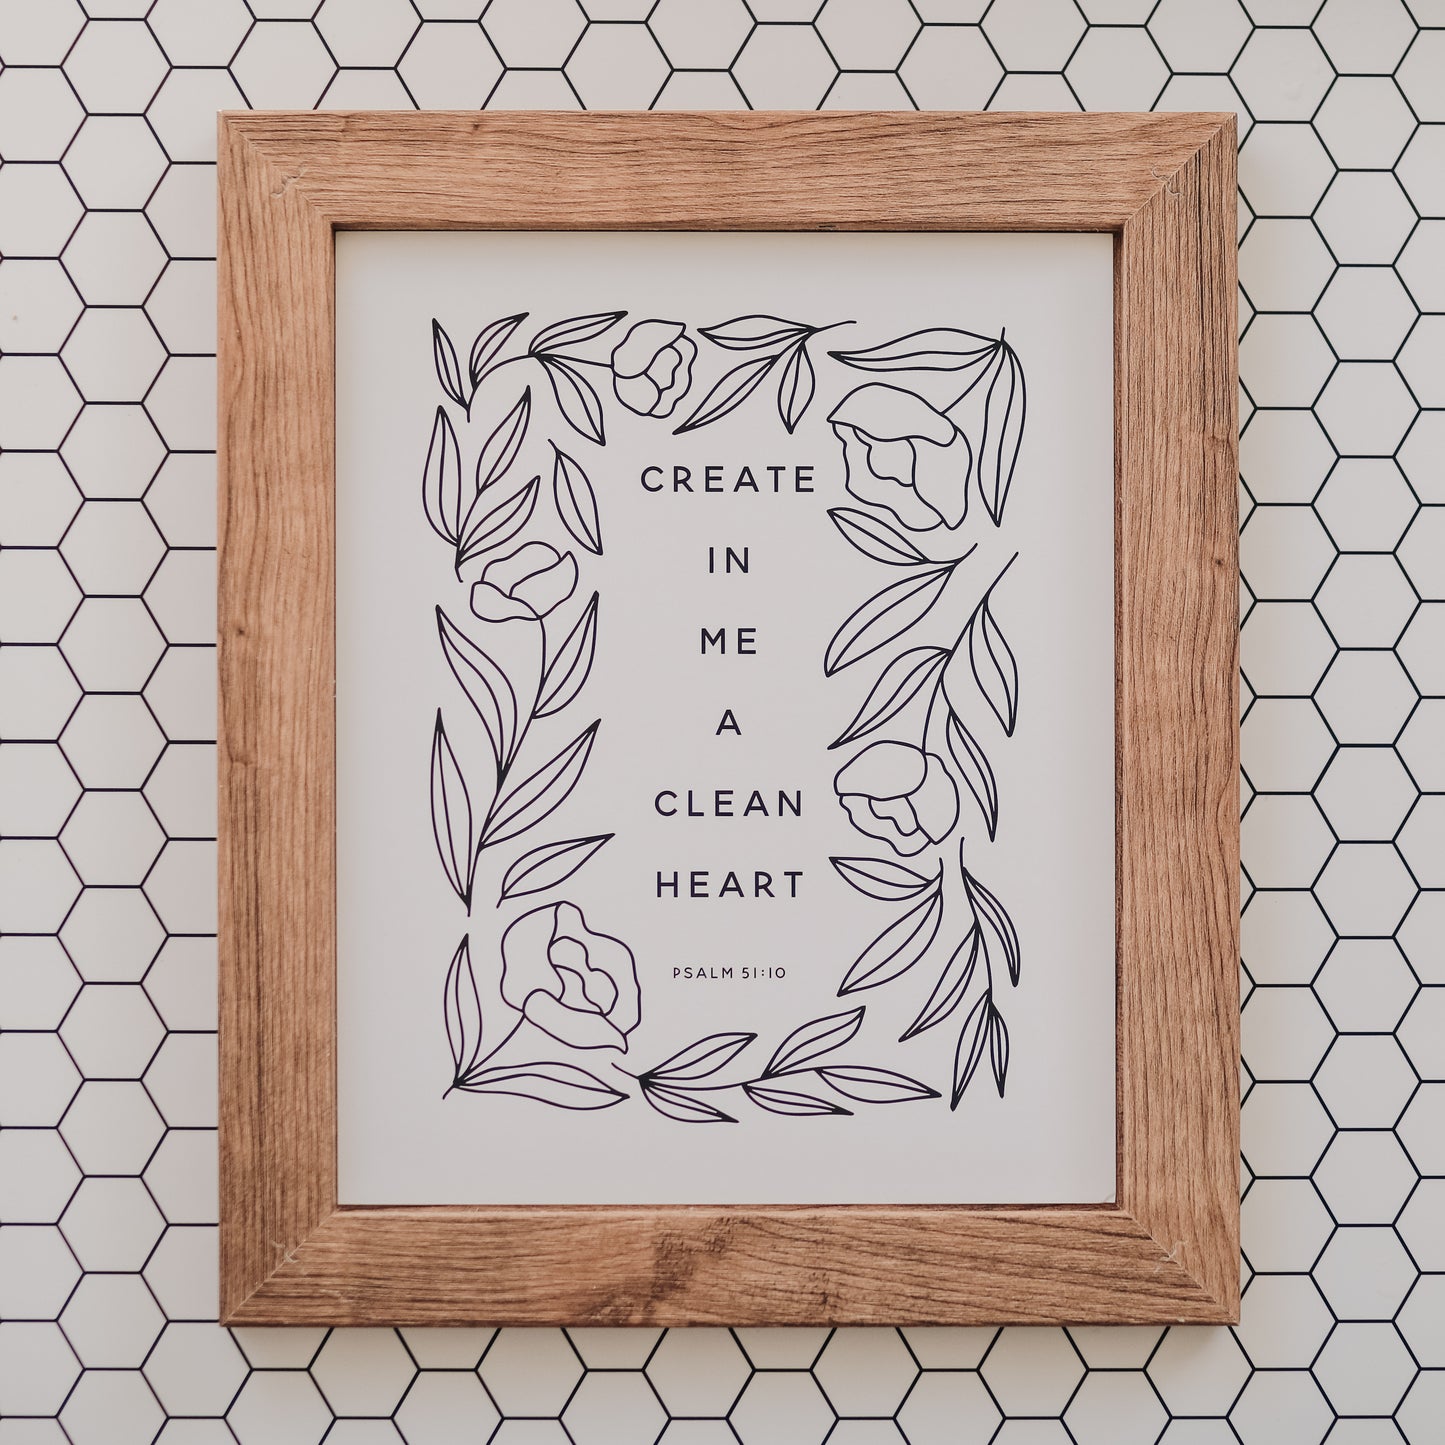 Clean Heart (Psalm 51:10) Print